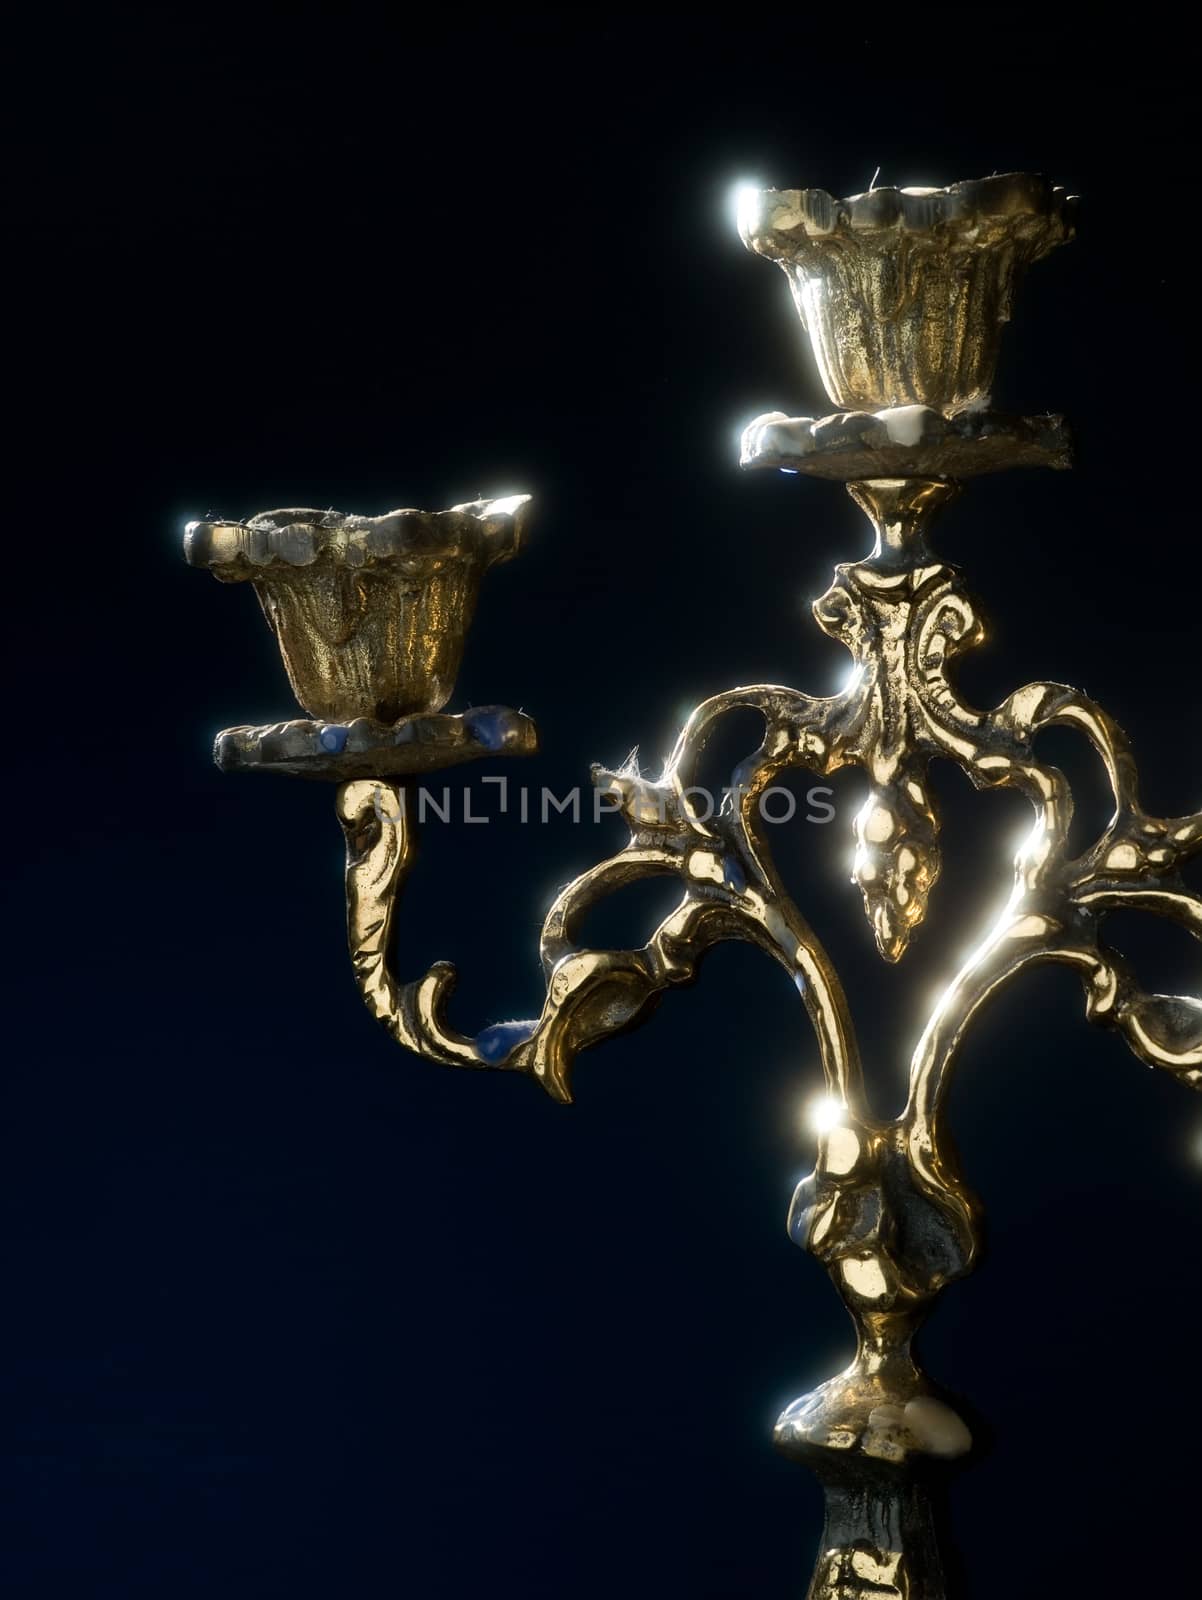 Antique candelabra to illuminate your darkest nights